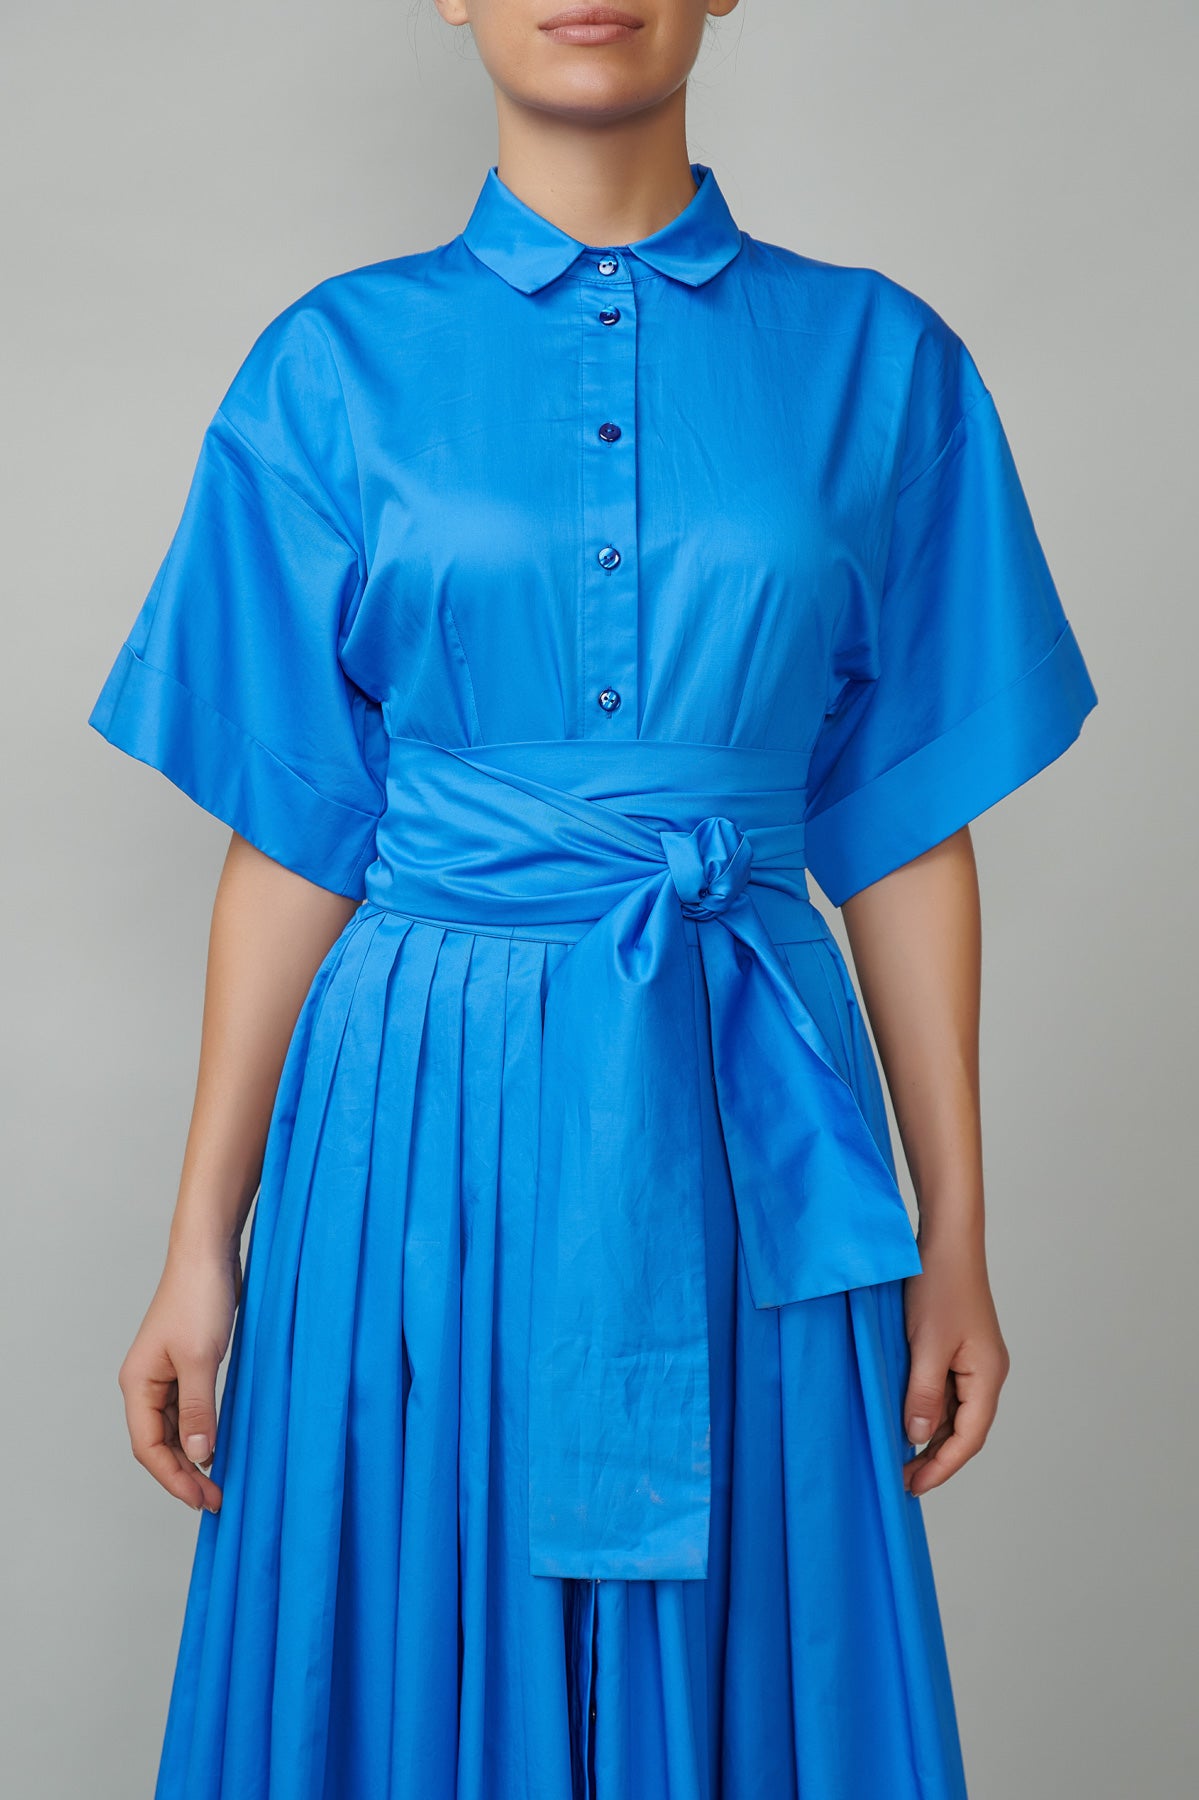 Evening dress, long, made of blue cotton